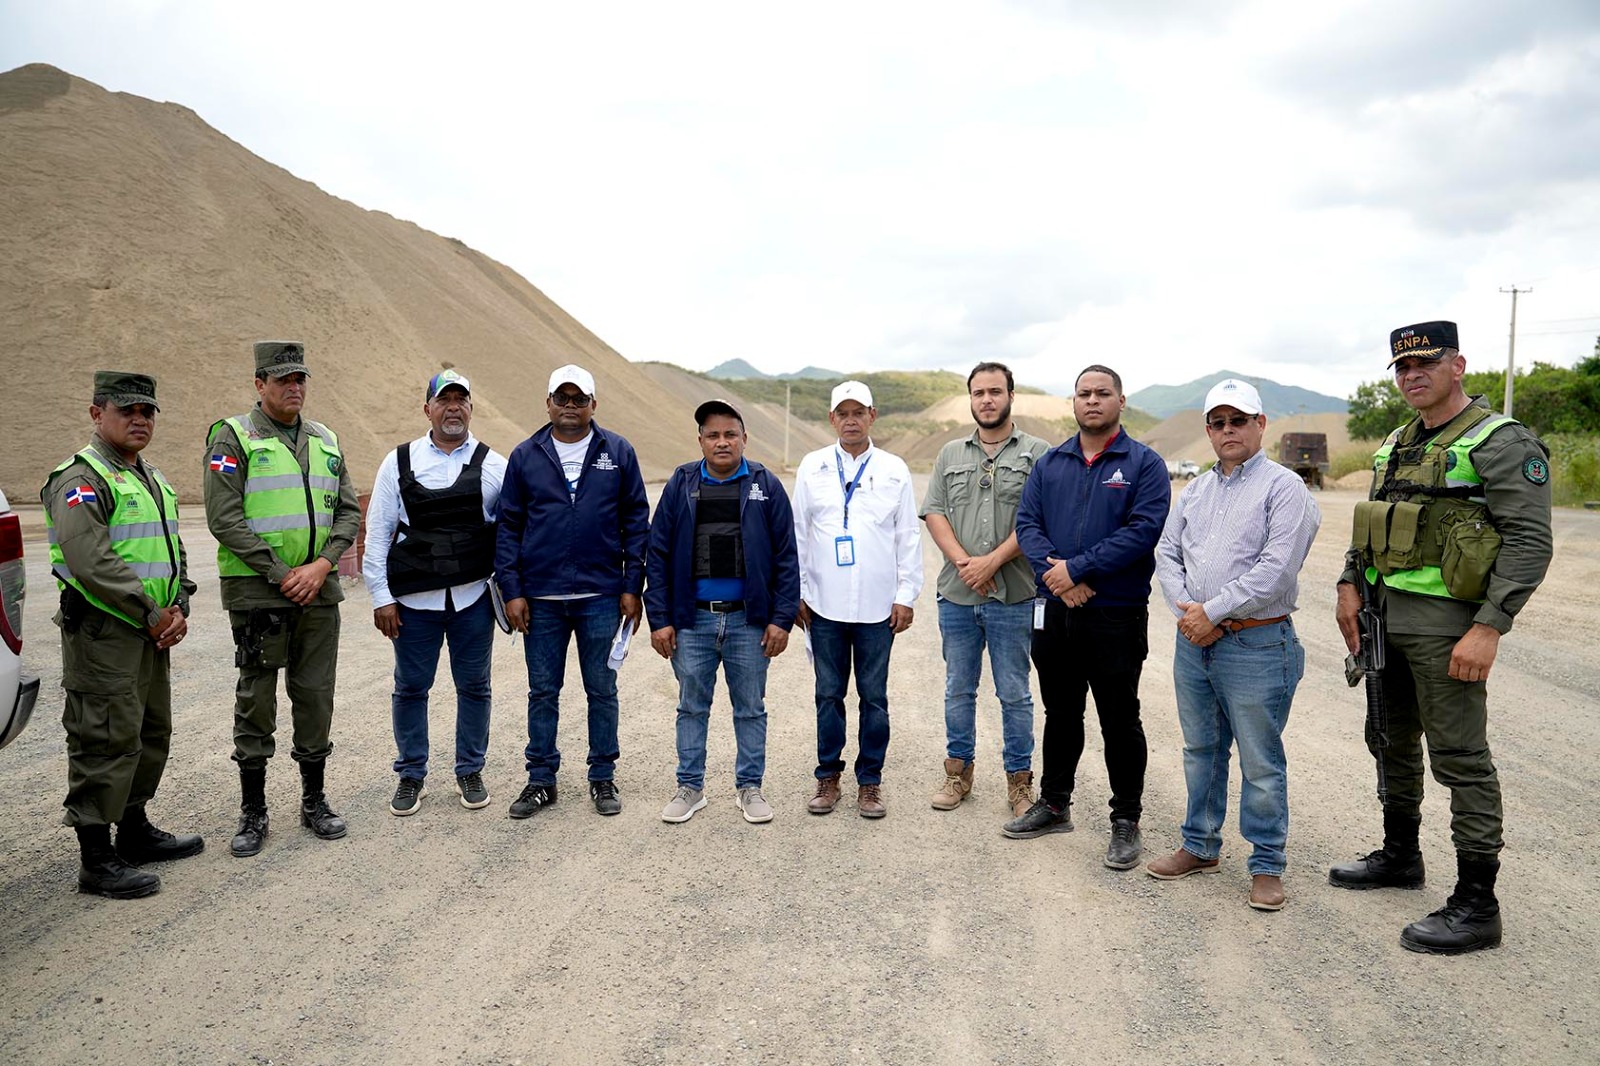 REPÚBLICA DOMINICANA: Autoridades medioambientales del Gobierno realizan amplio operativo de fiscalización de minas y empresas de agregados en Navarrete